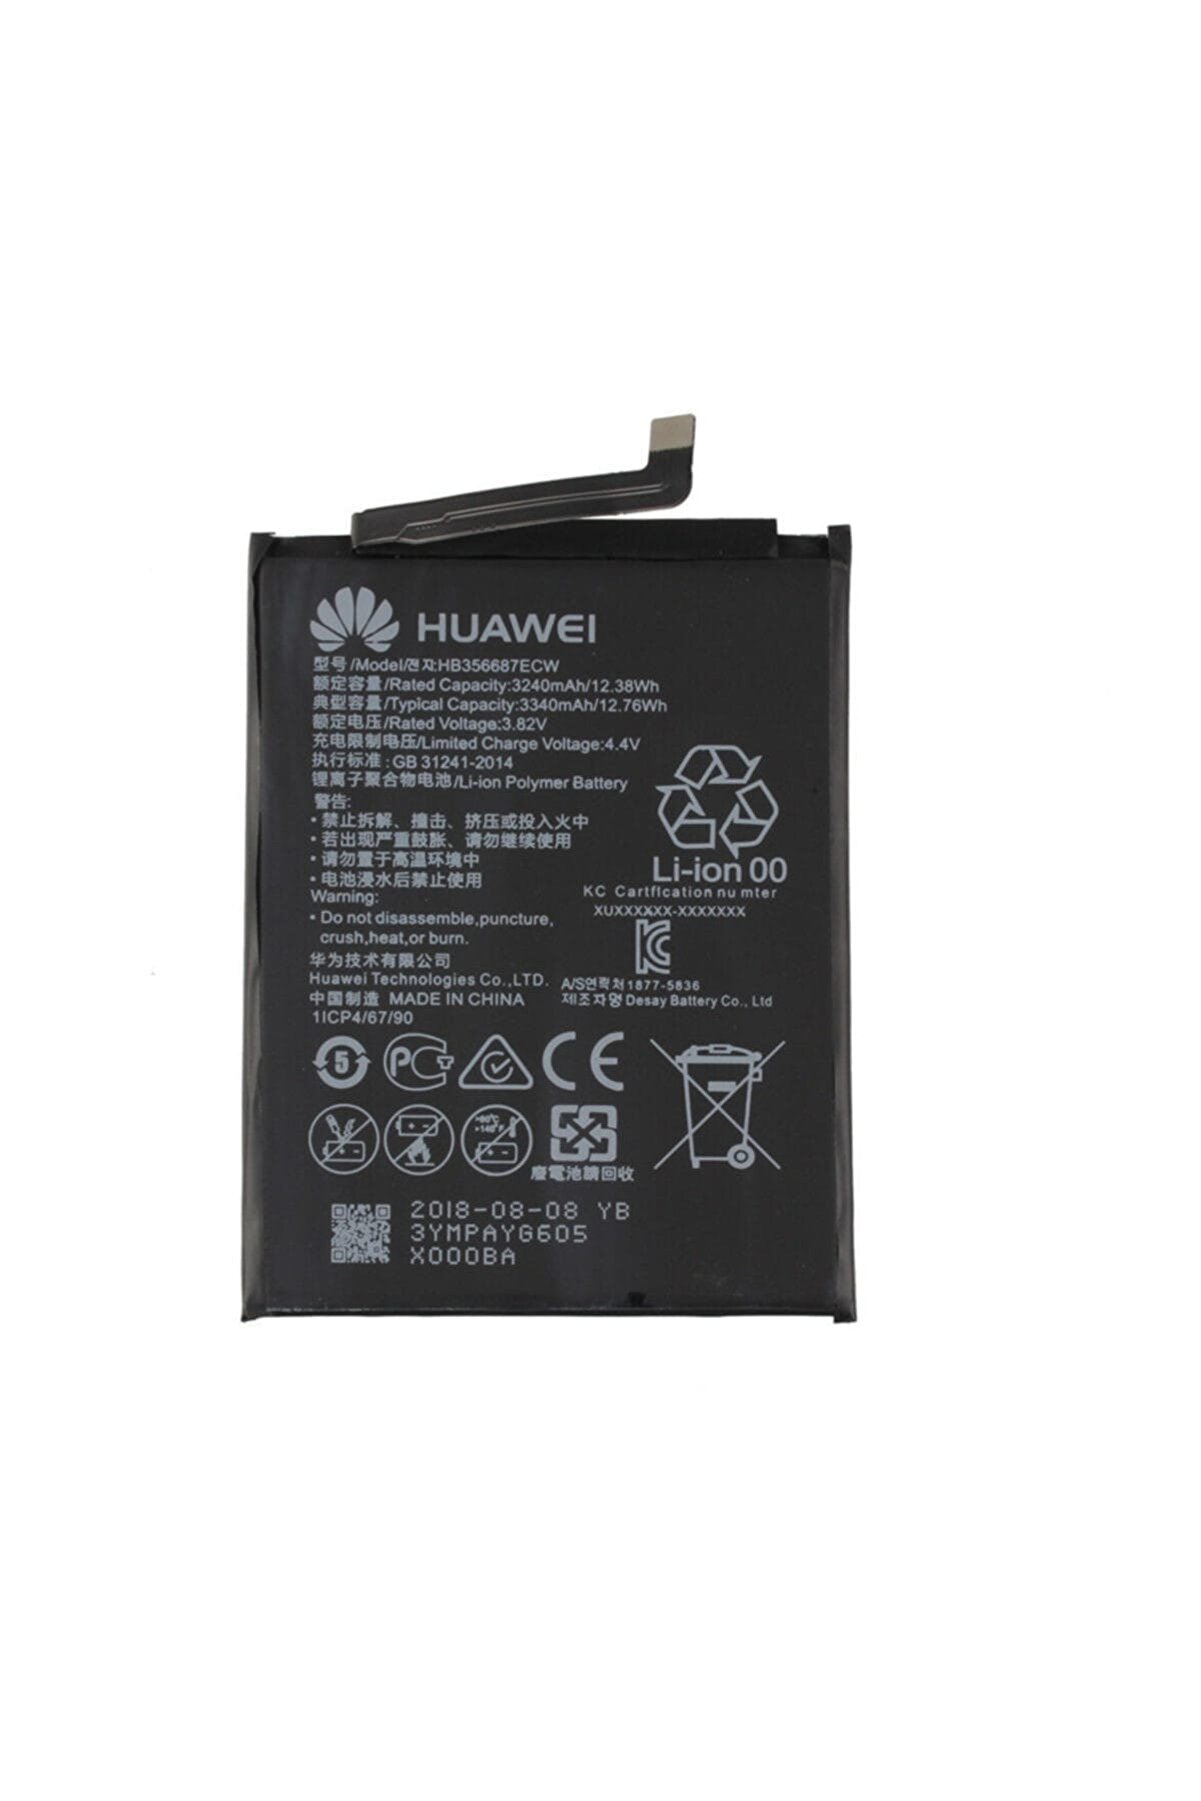 Huawei Mate 10 Lite / G10 HB356687ECW Batarya Pil ve Tamir Seti